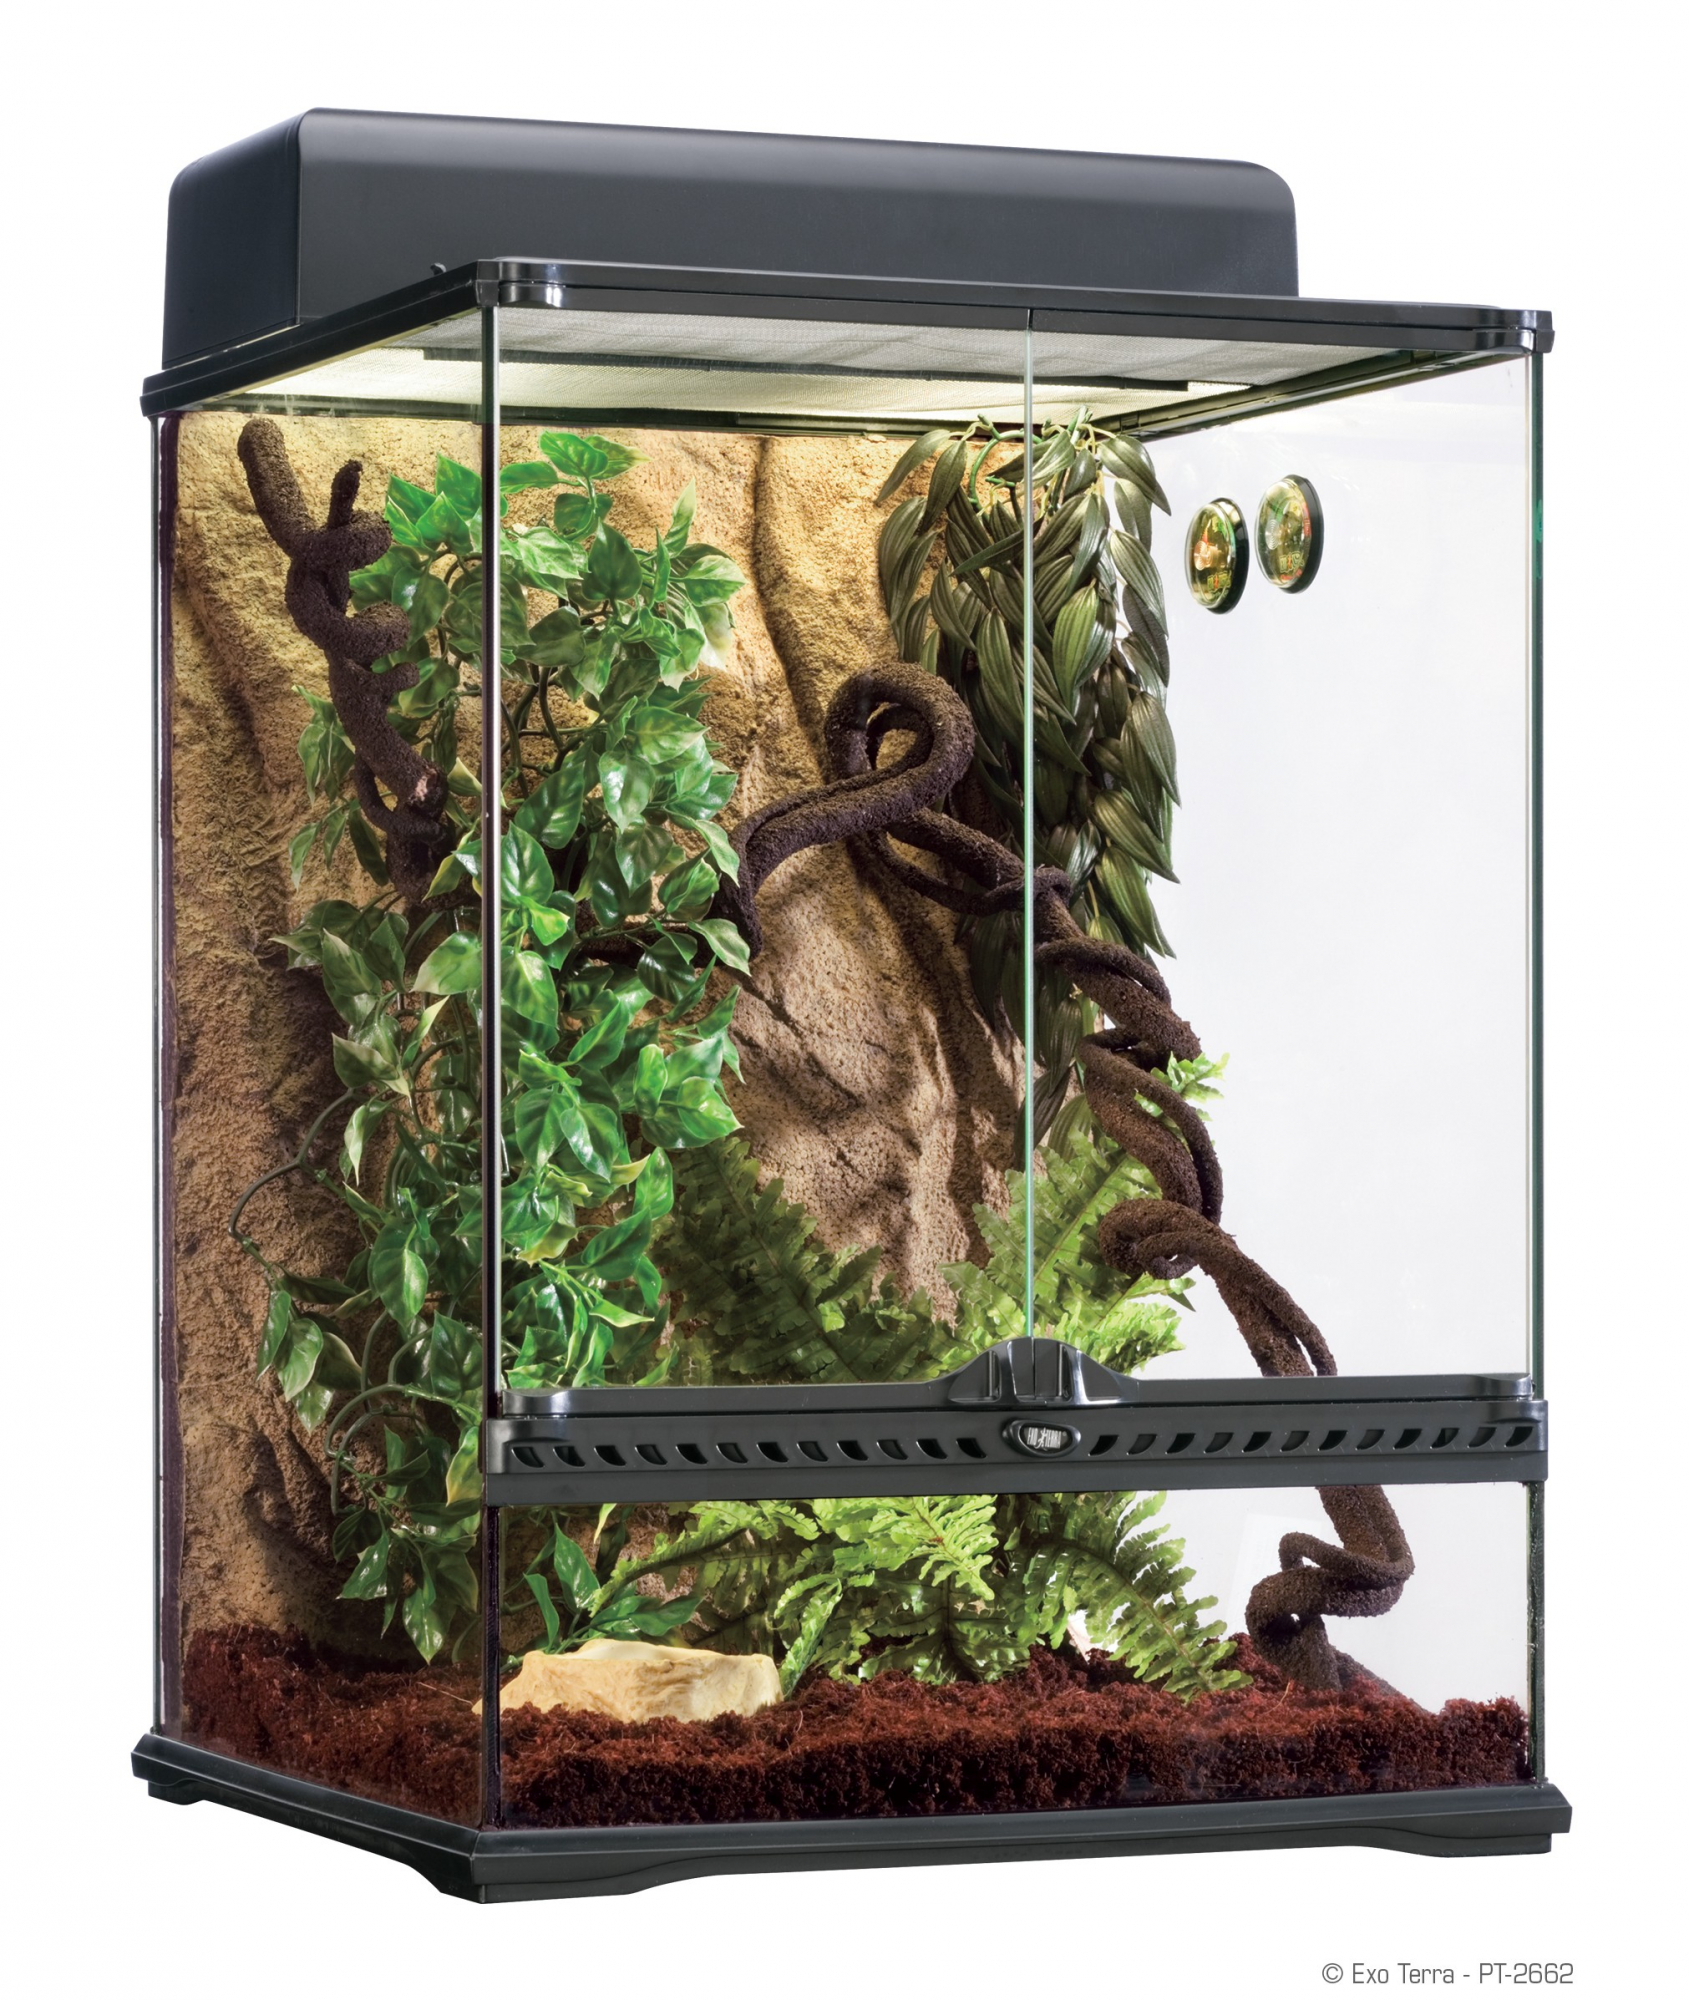  Terrarium en verre Exo Terra Rainforest - 45x45x60 cm